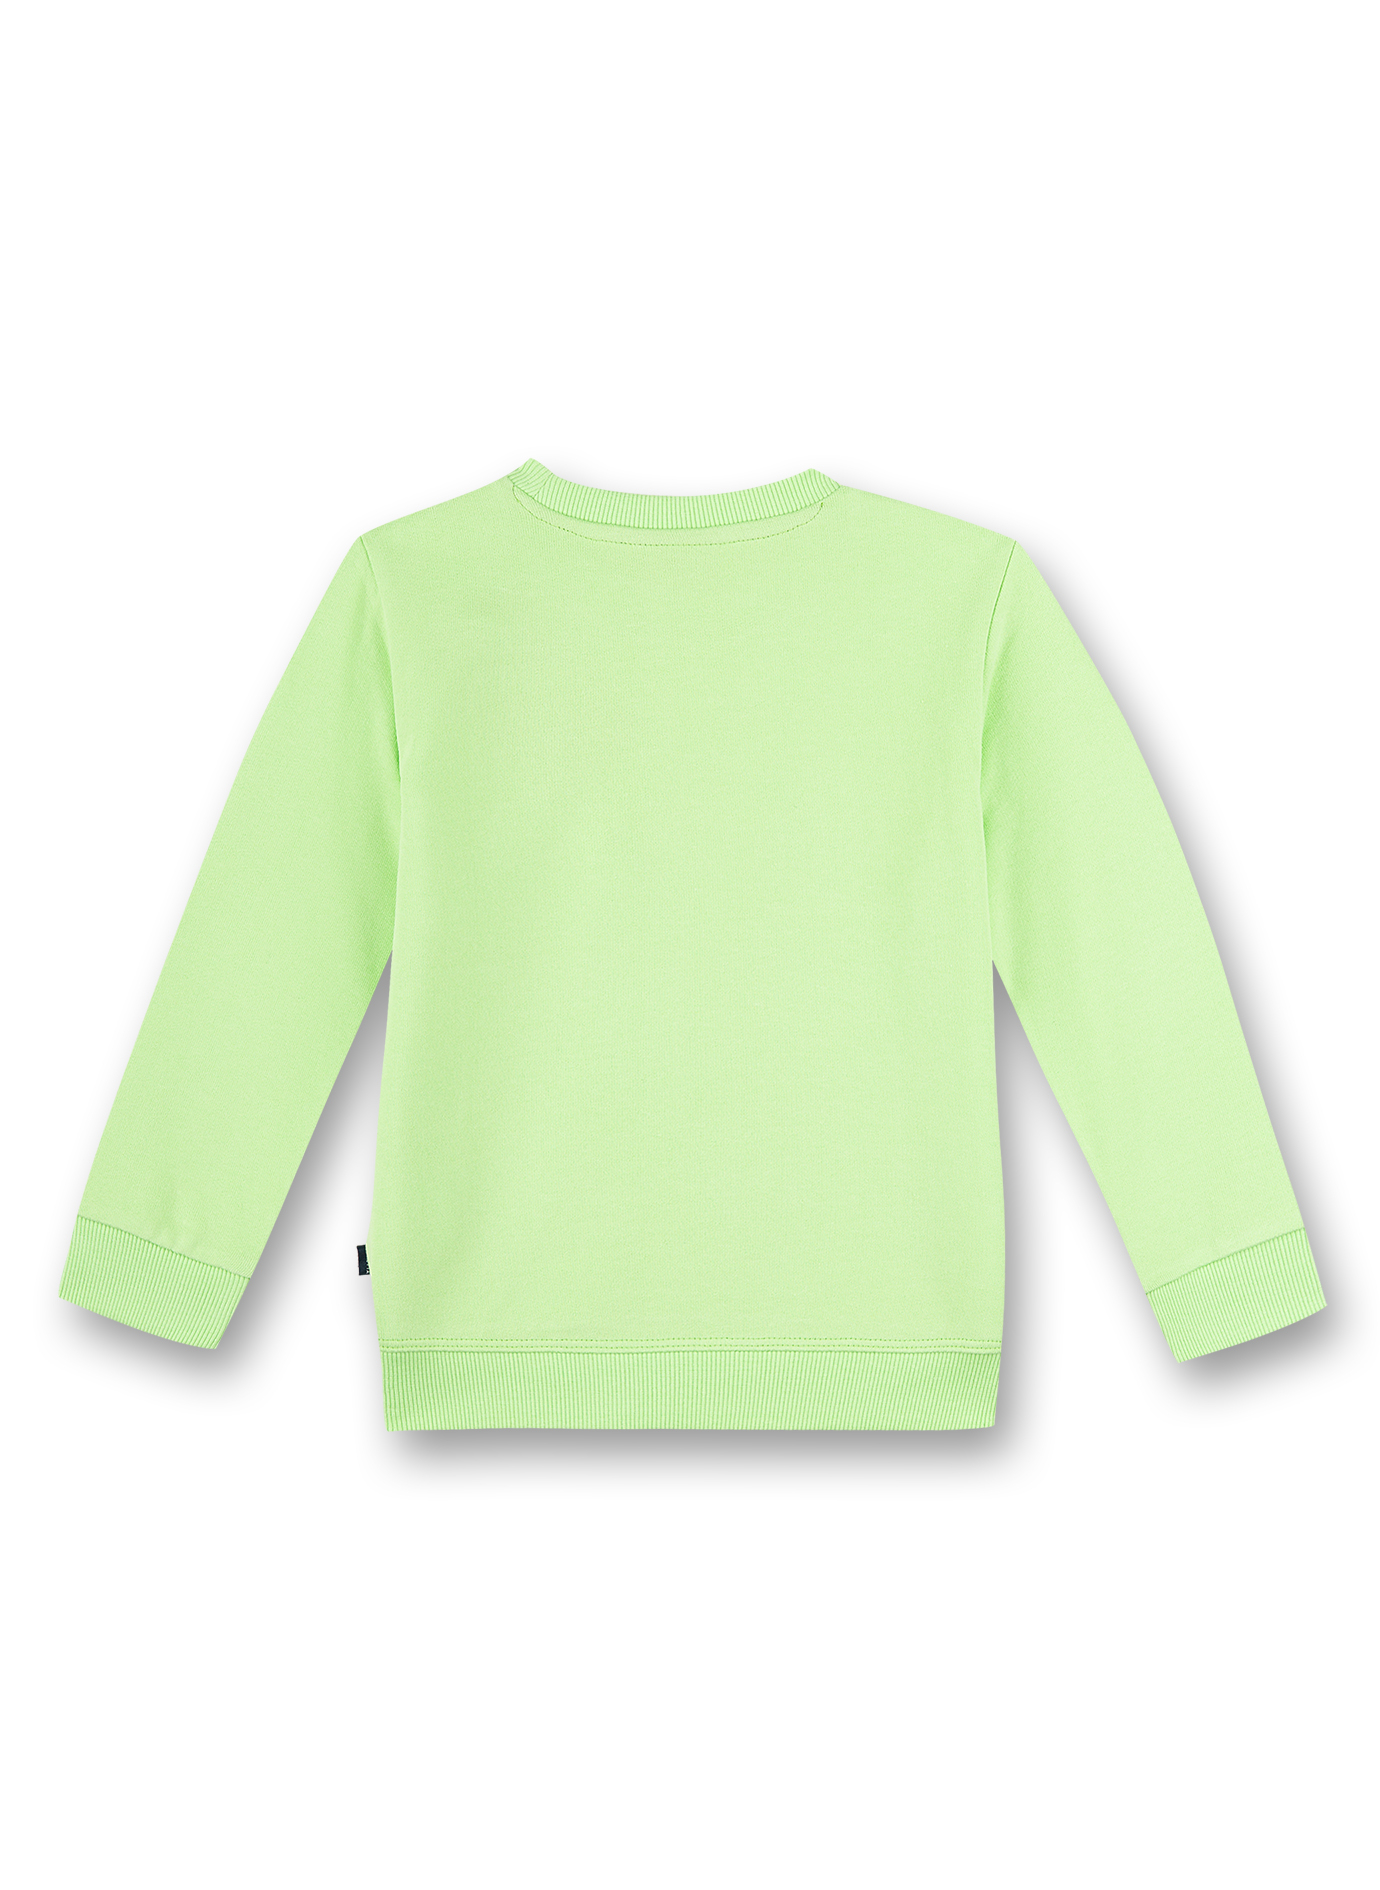 Jungen-Sweatshirt Grün Crocodile